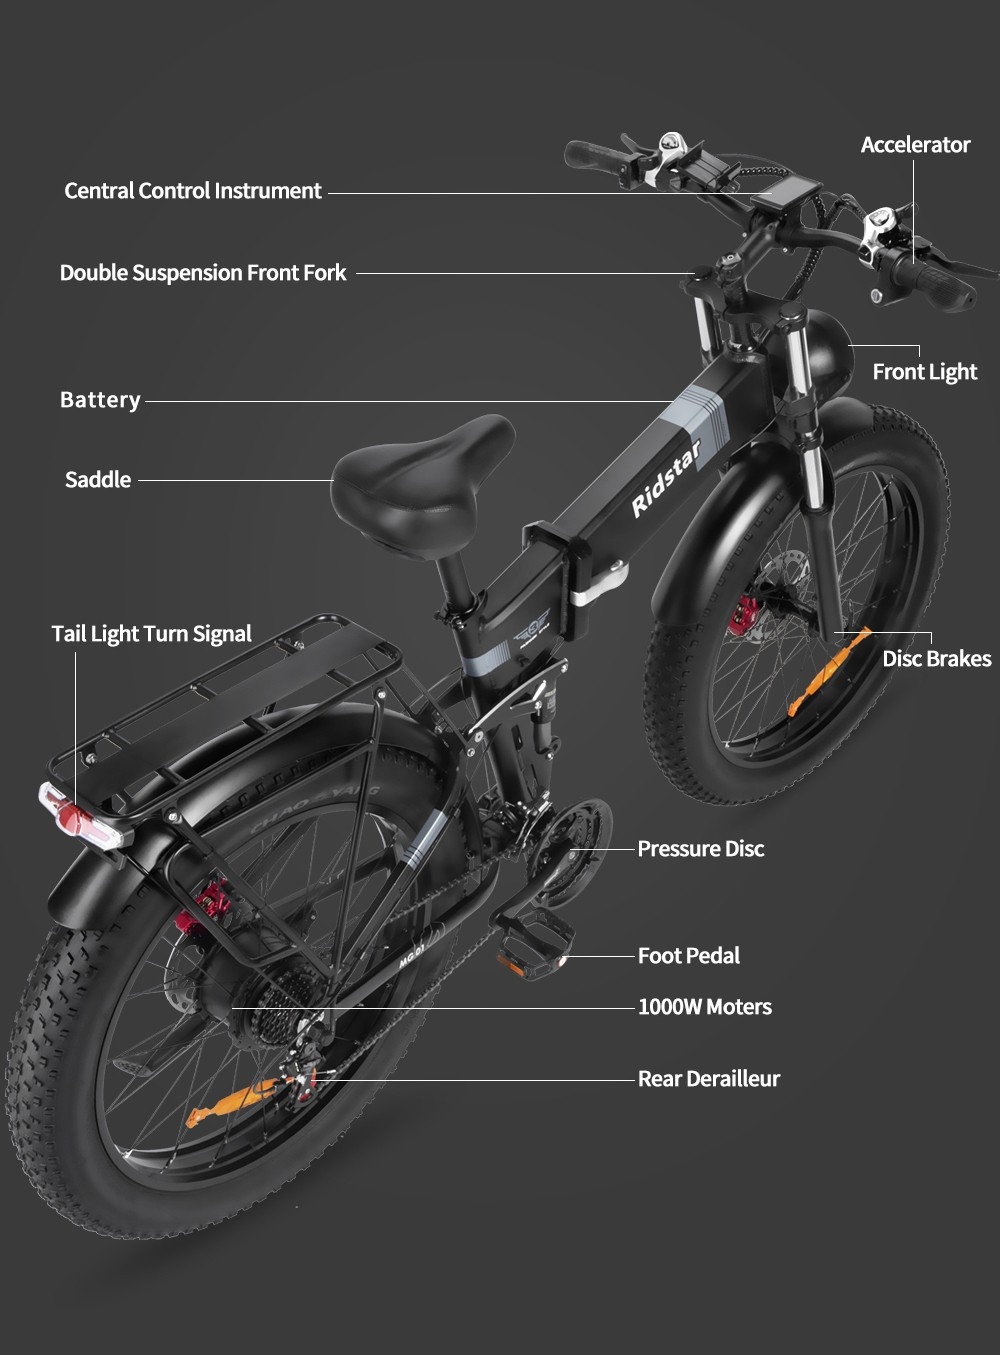 Bici elettrica Ridstar H26 Pro, pneumatici grassi fuoristrada da 26 * 4.0 pollici Motore da 1000 W Batteria da 48 V 20 Ah Velocità massima 36 miglia all'ora Portata massima 120 km Freno a olio